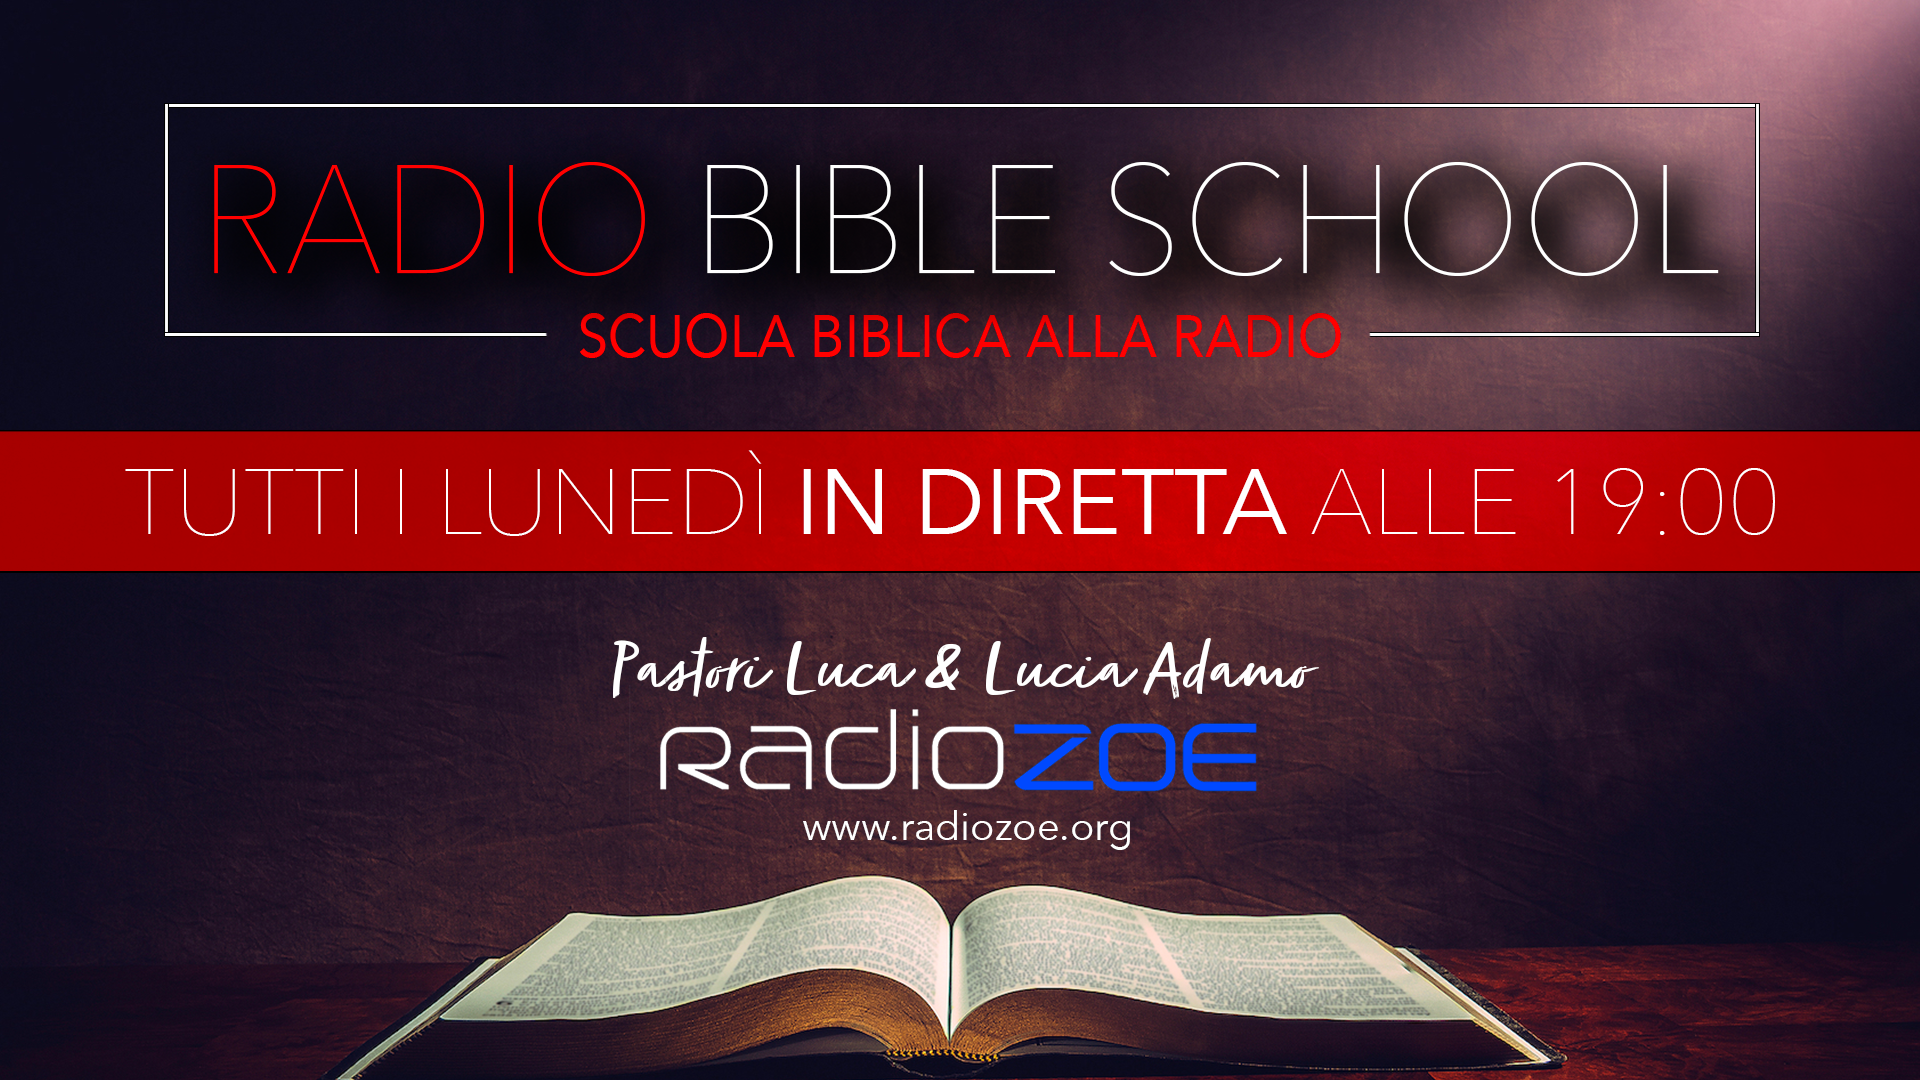 Radio Bible School, la prima scuola biblica alla radio!